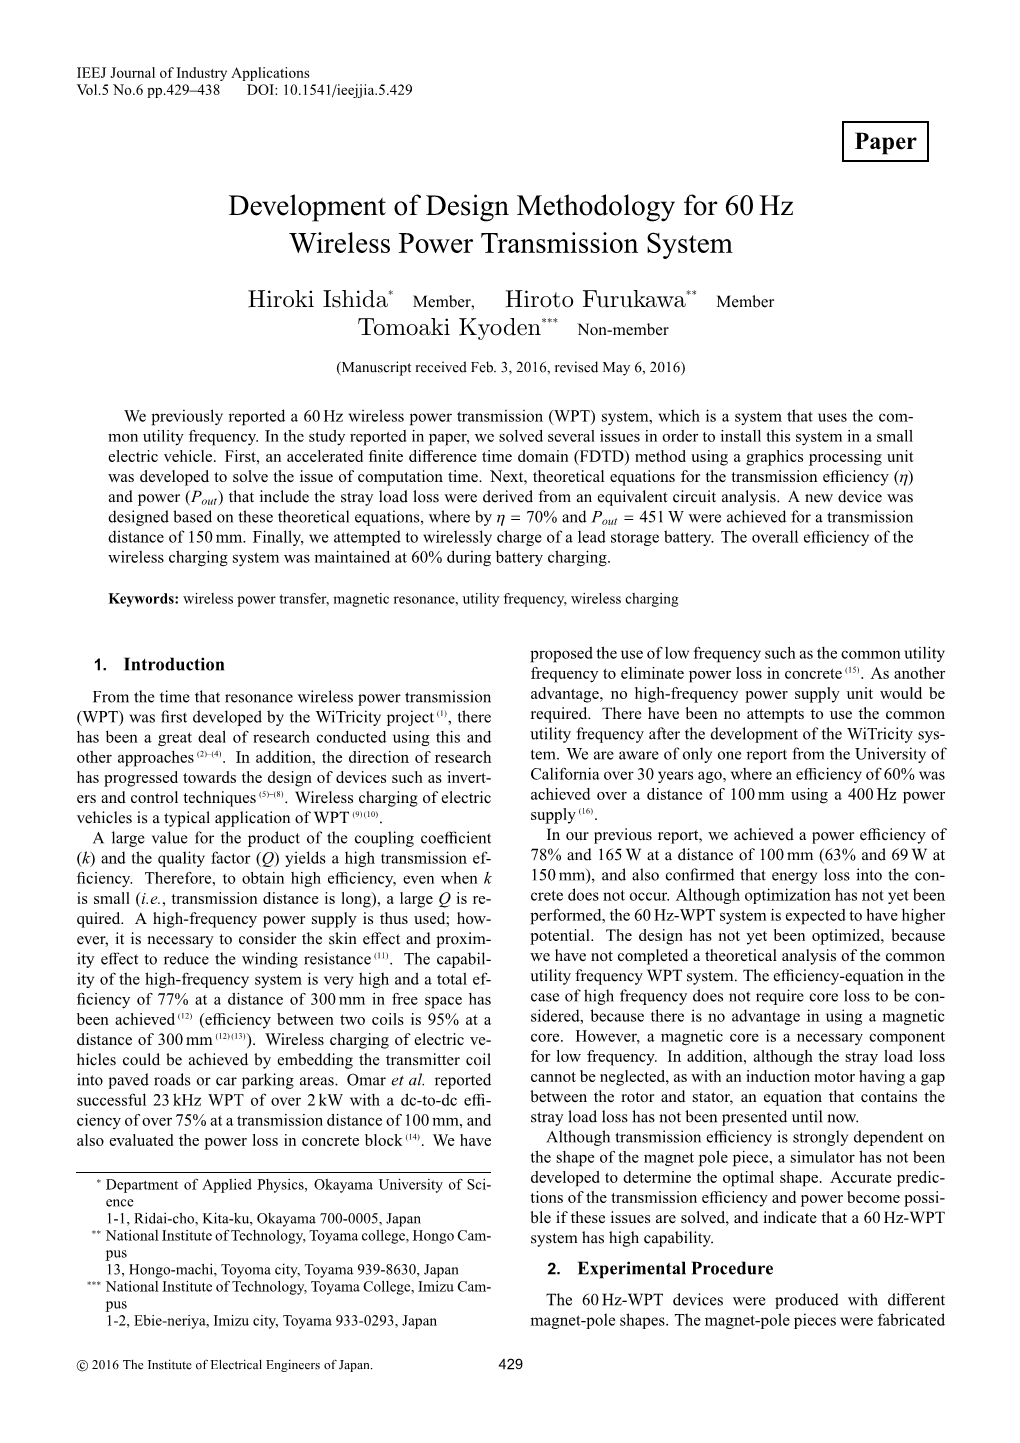 Development of Design Methodology for 60Hz Wireless Power